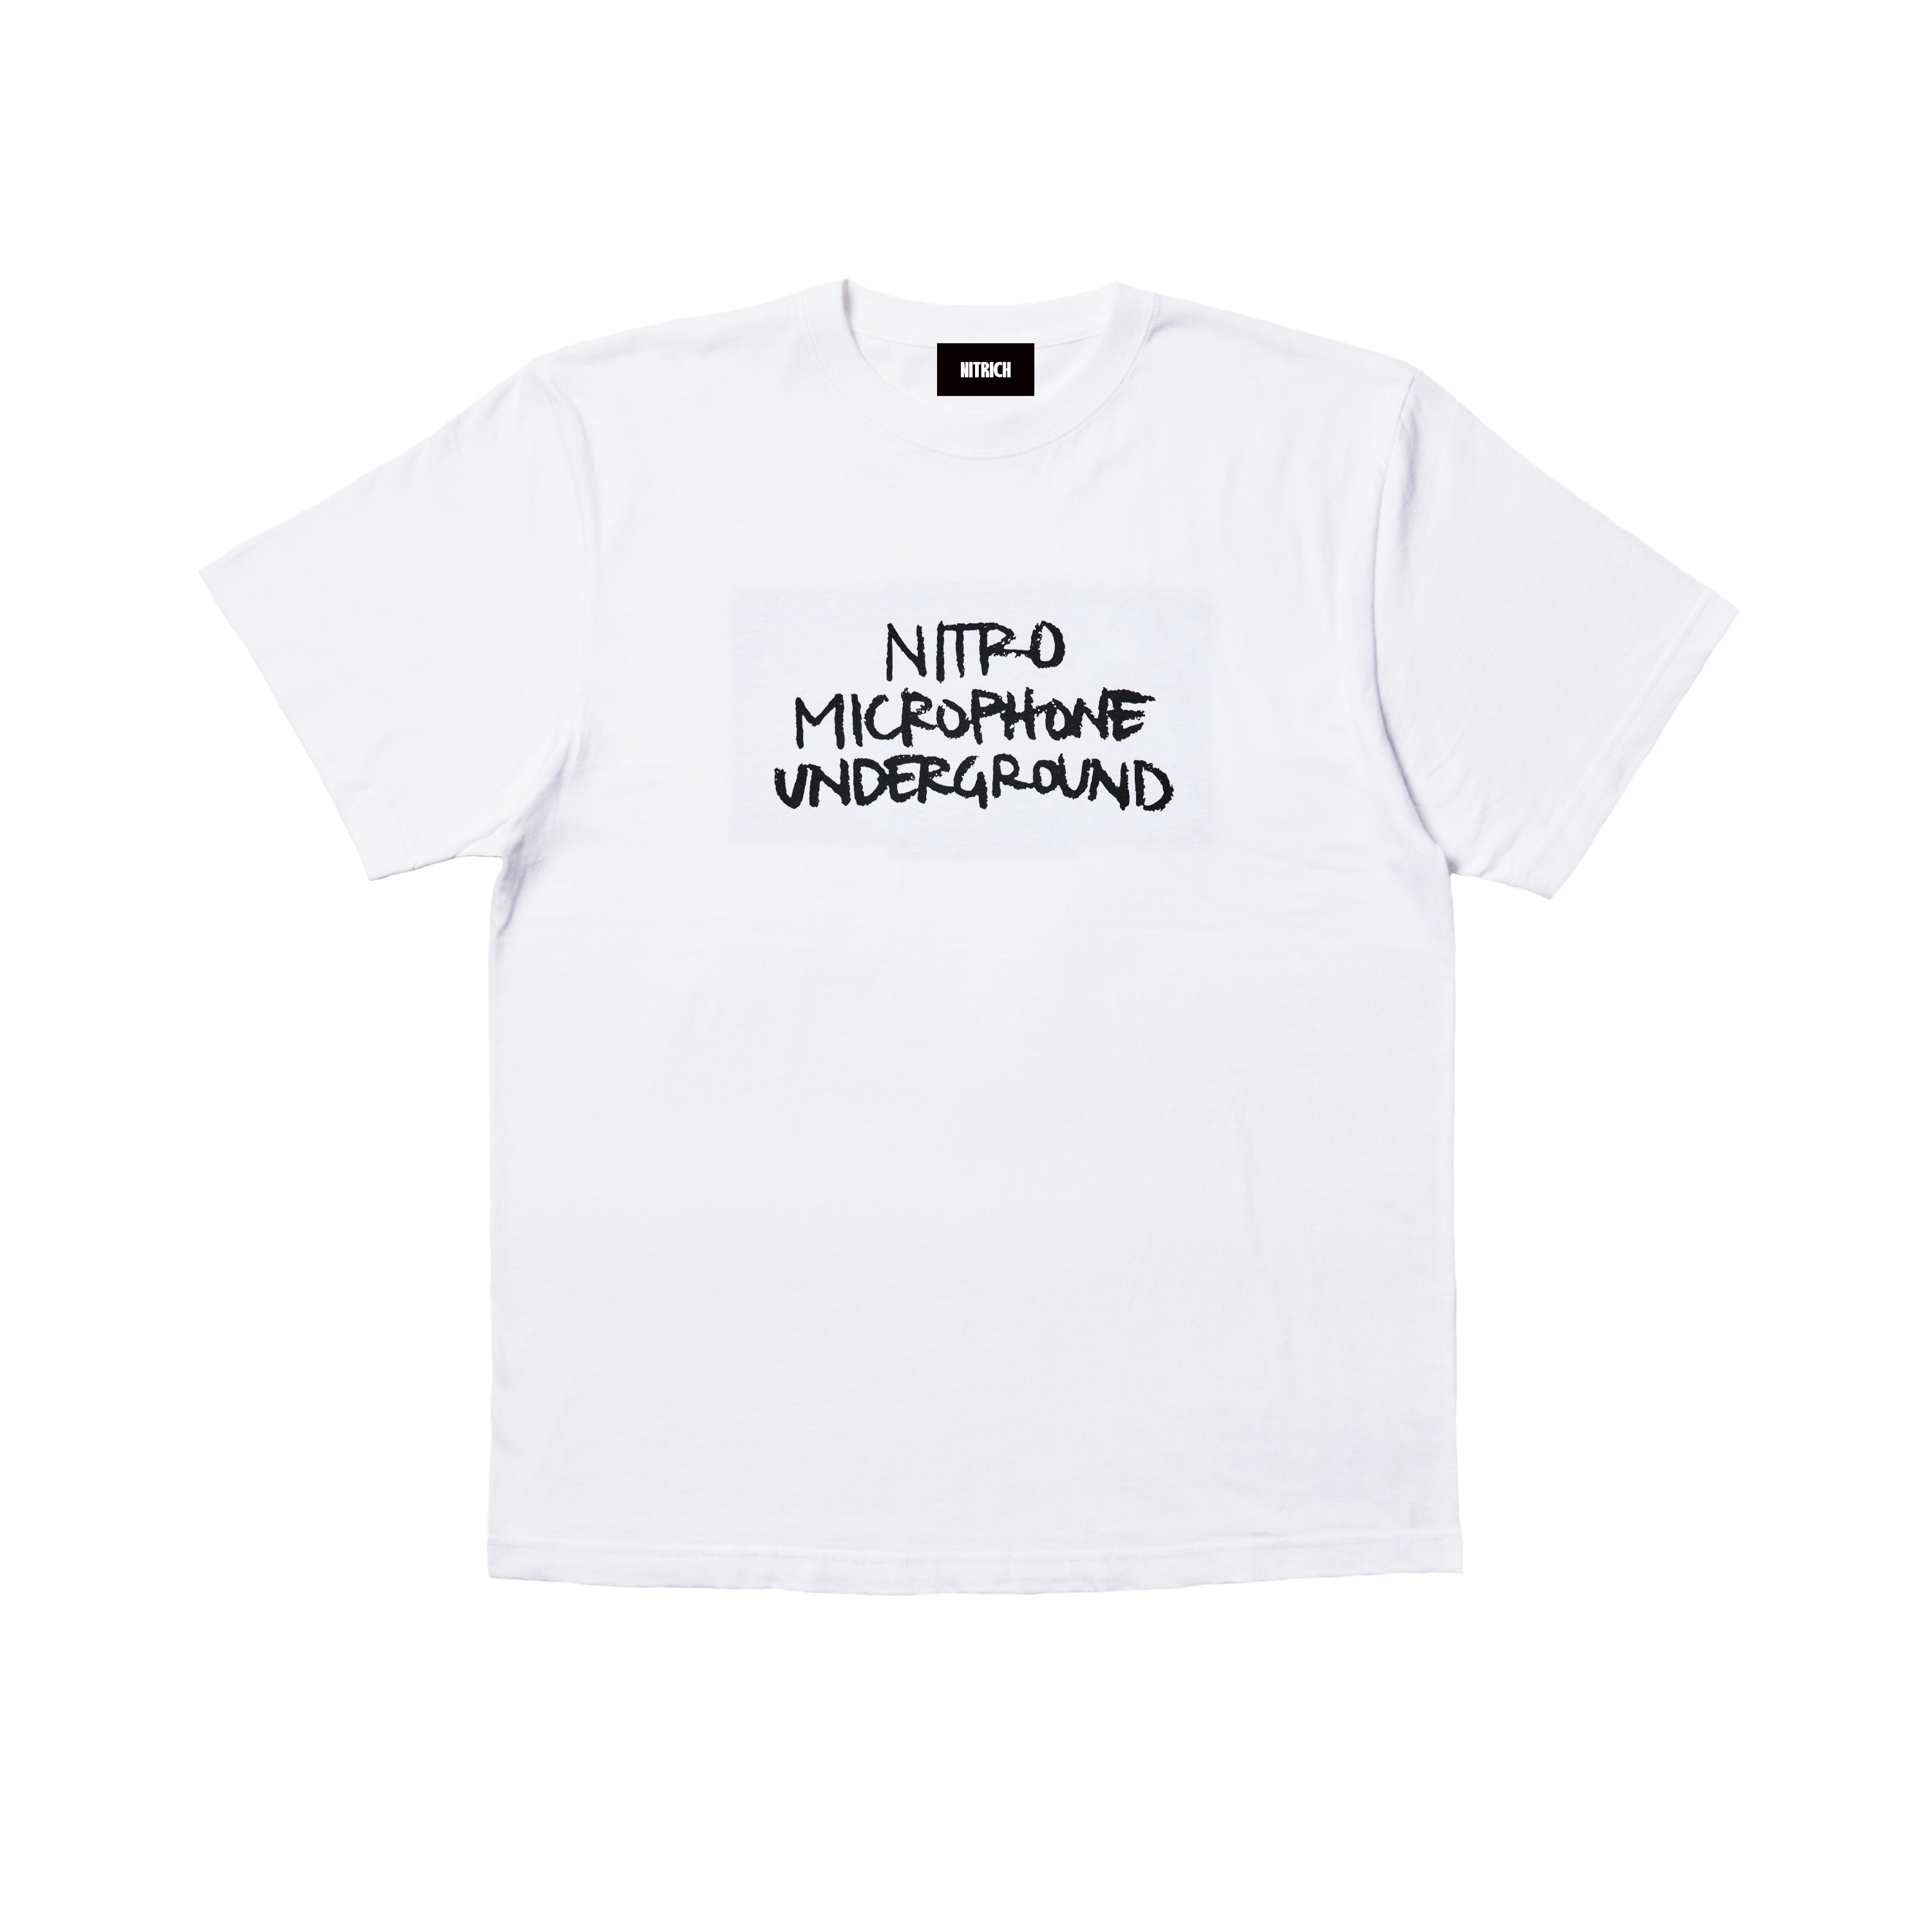 NITRO MICROPHONE UNDERGROUND Tシャツ - トップス